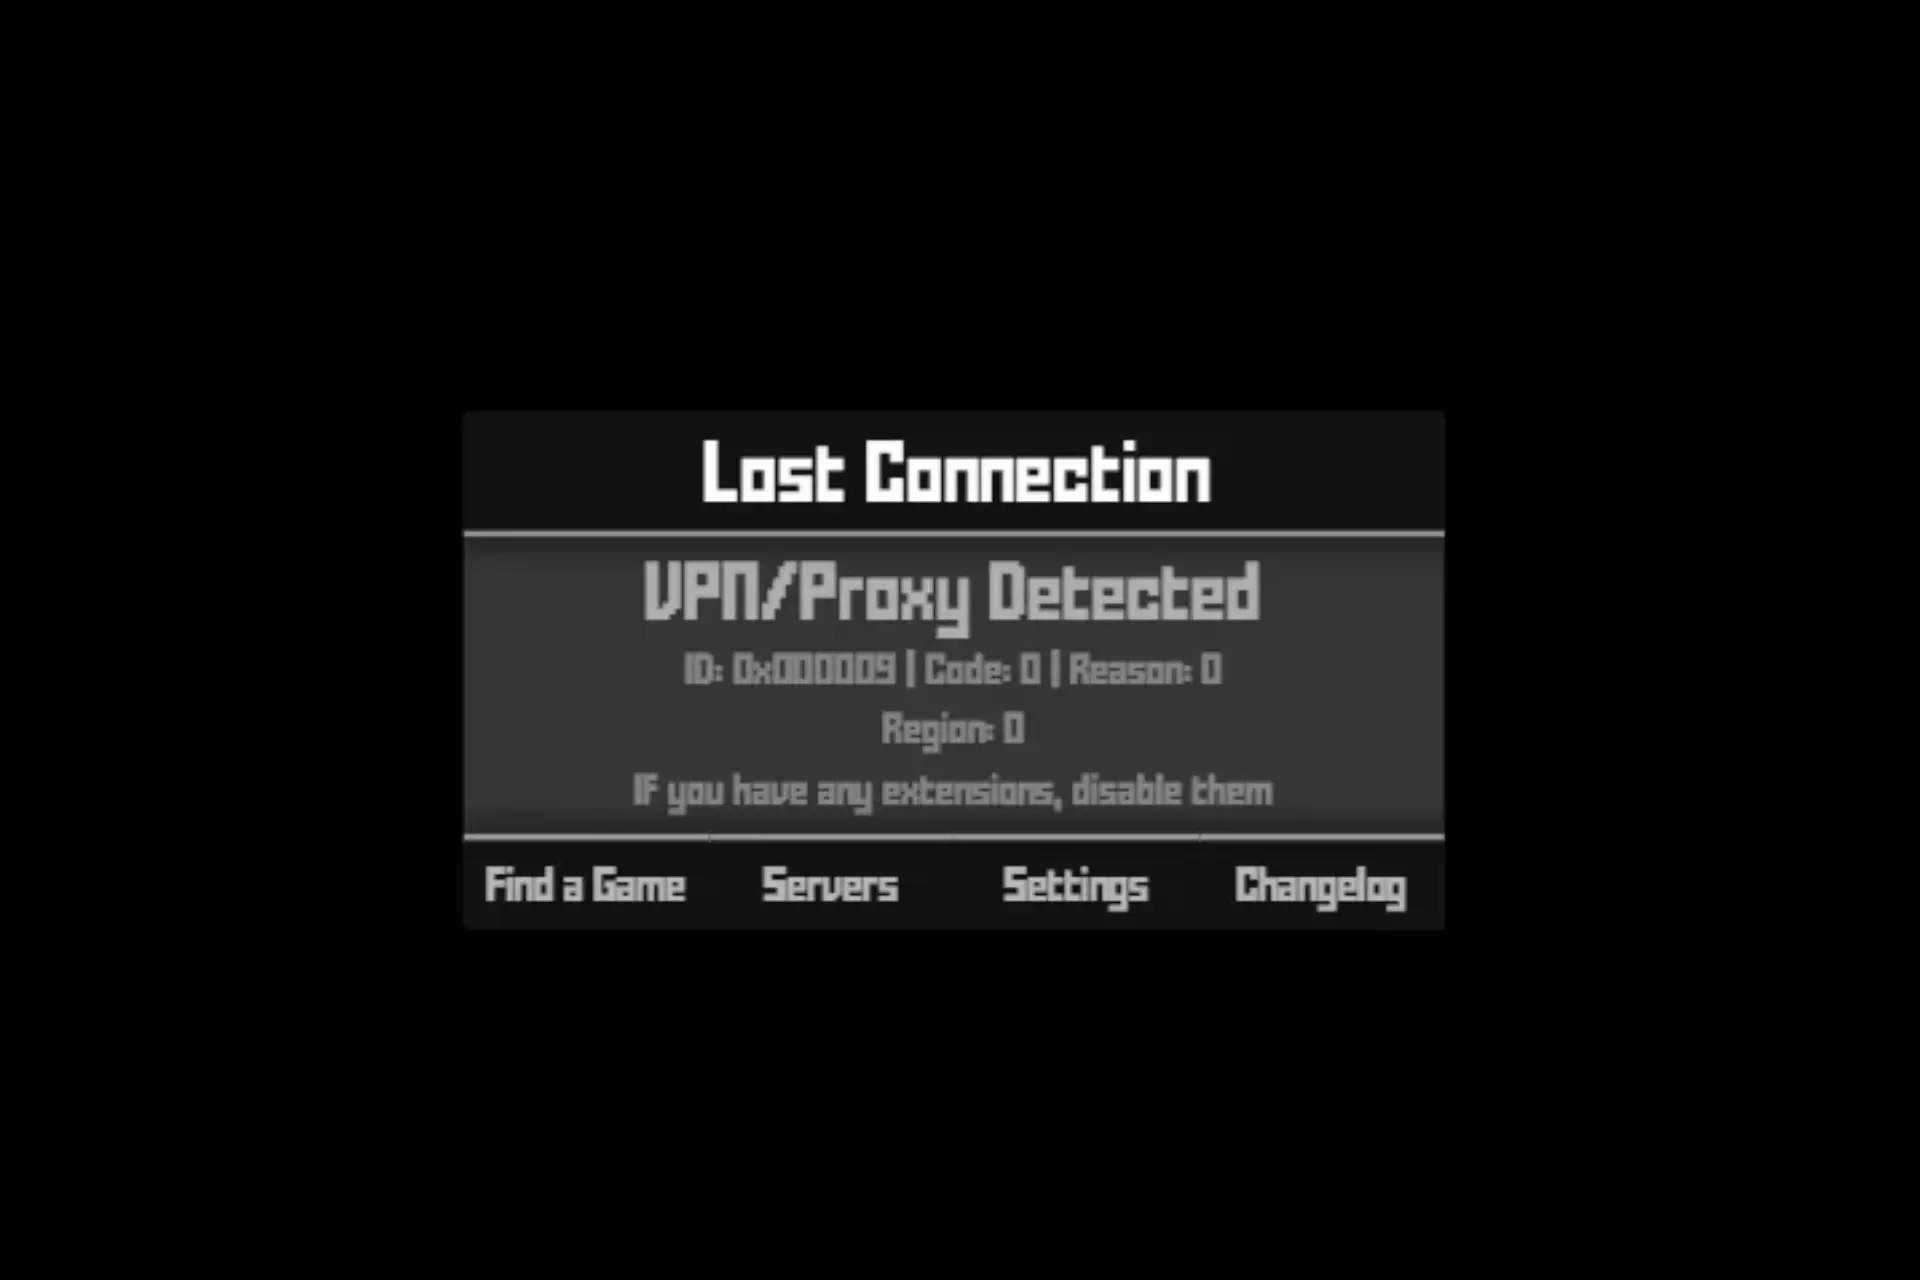 vpn/proxy detected krunker